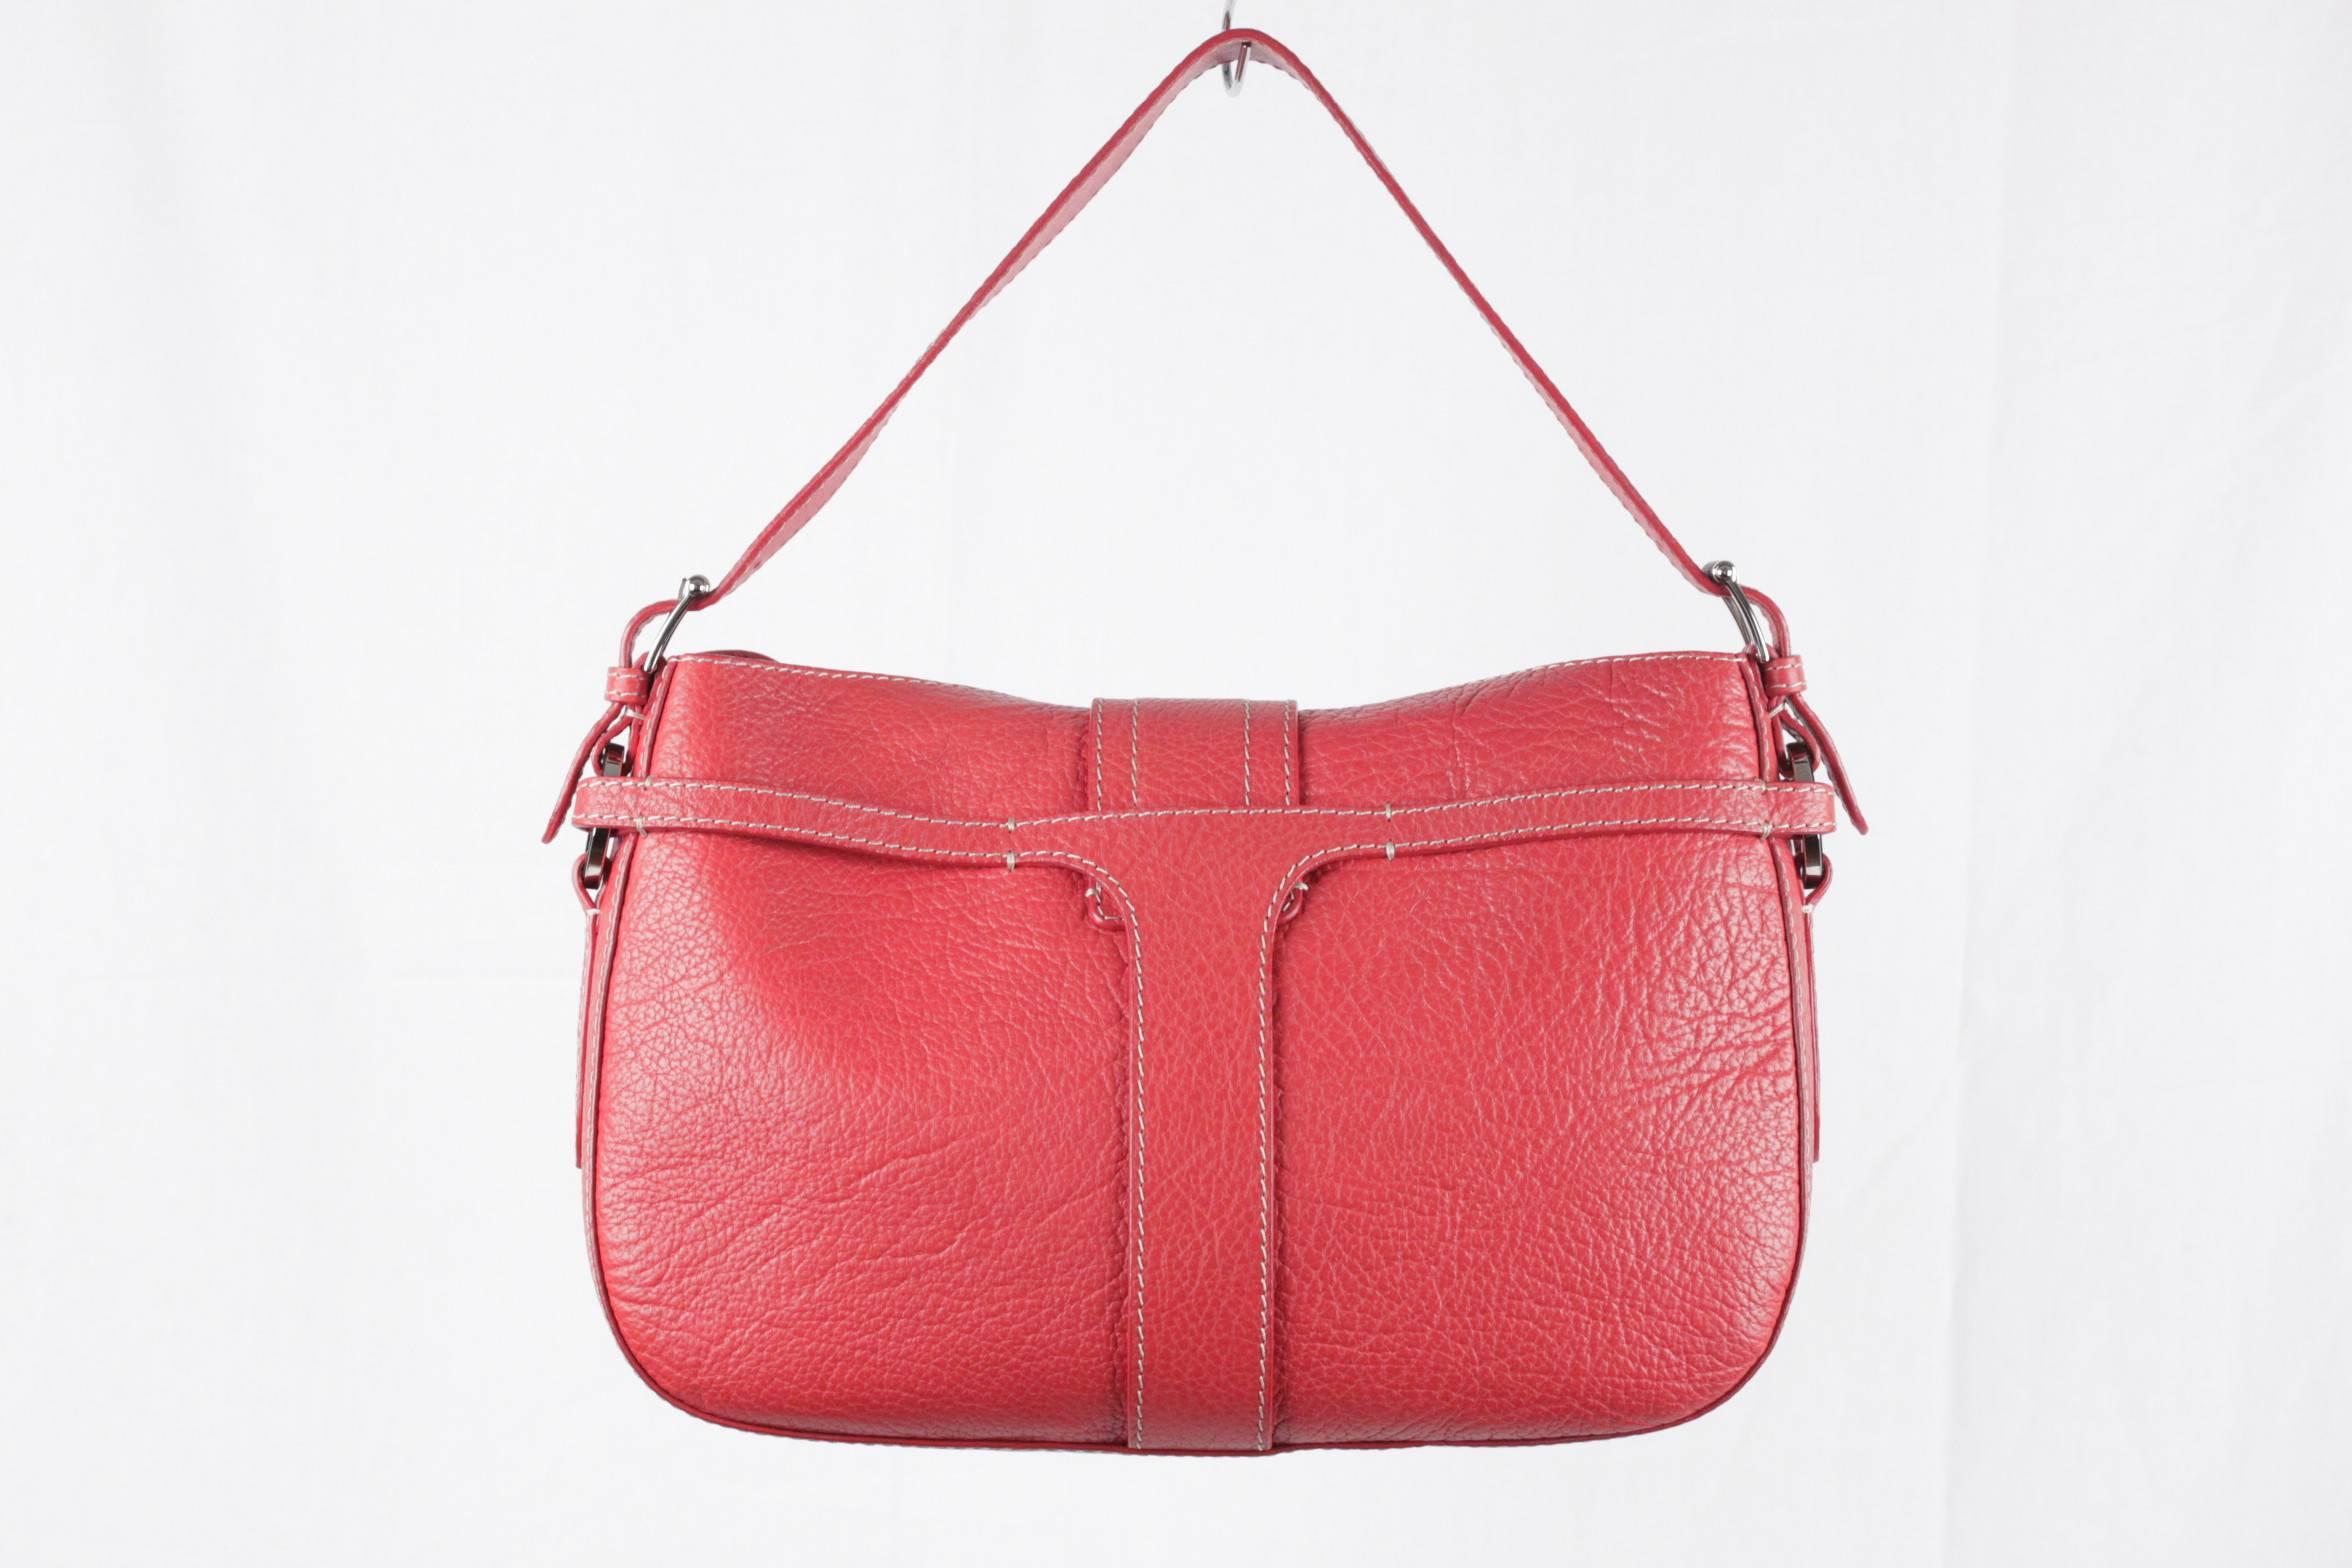 VALENTINO GARAVANI Red Leather SHOULDER BAG Handbag w/ FRONT POCKETS 2